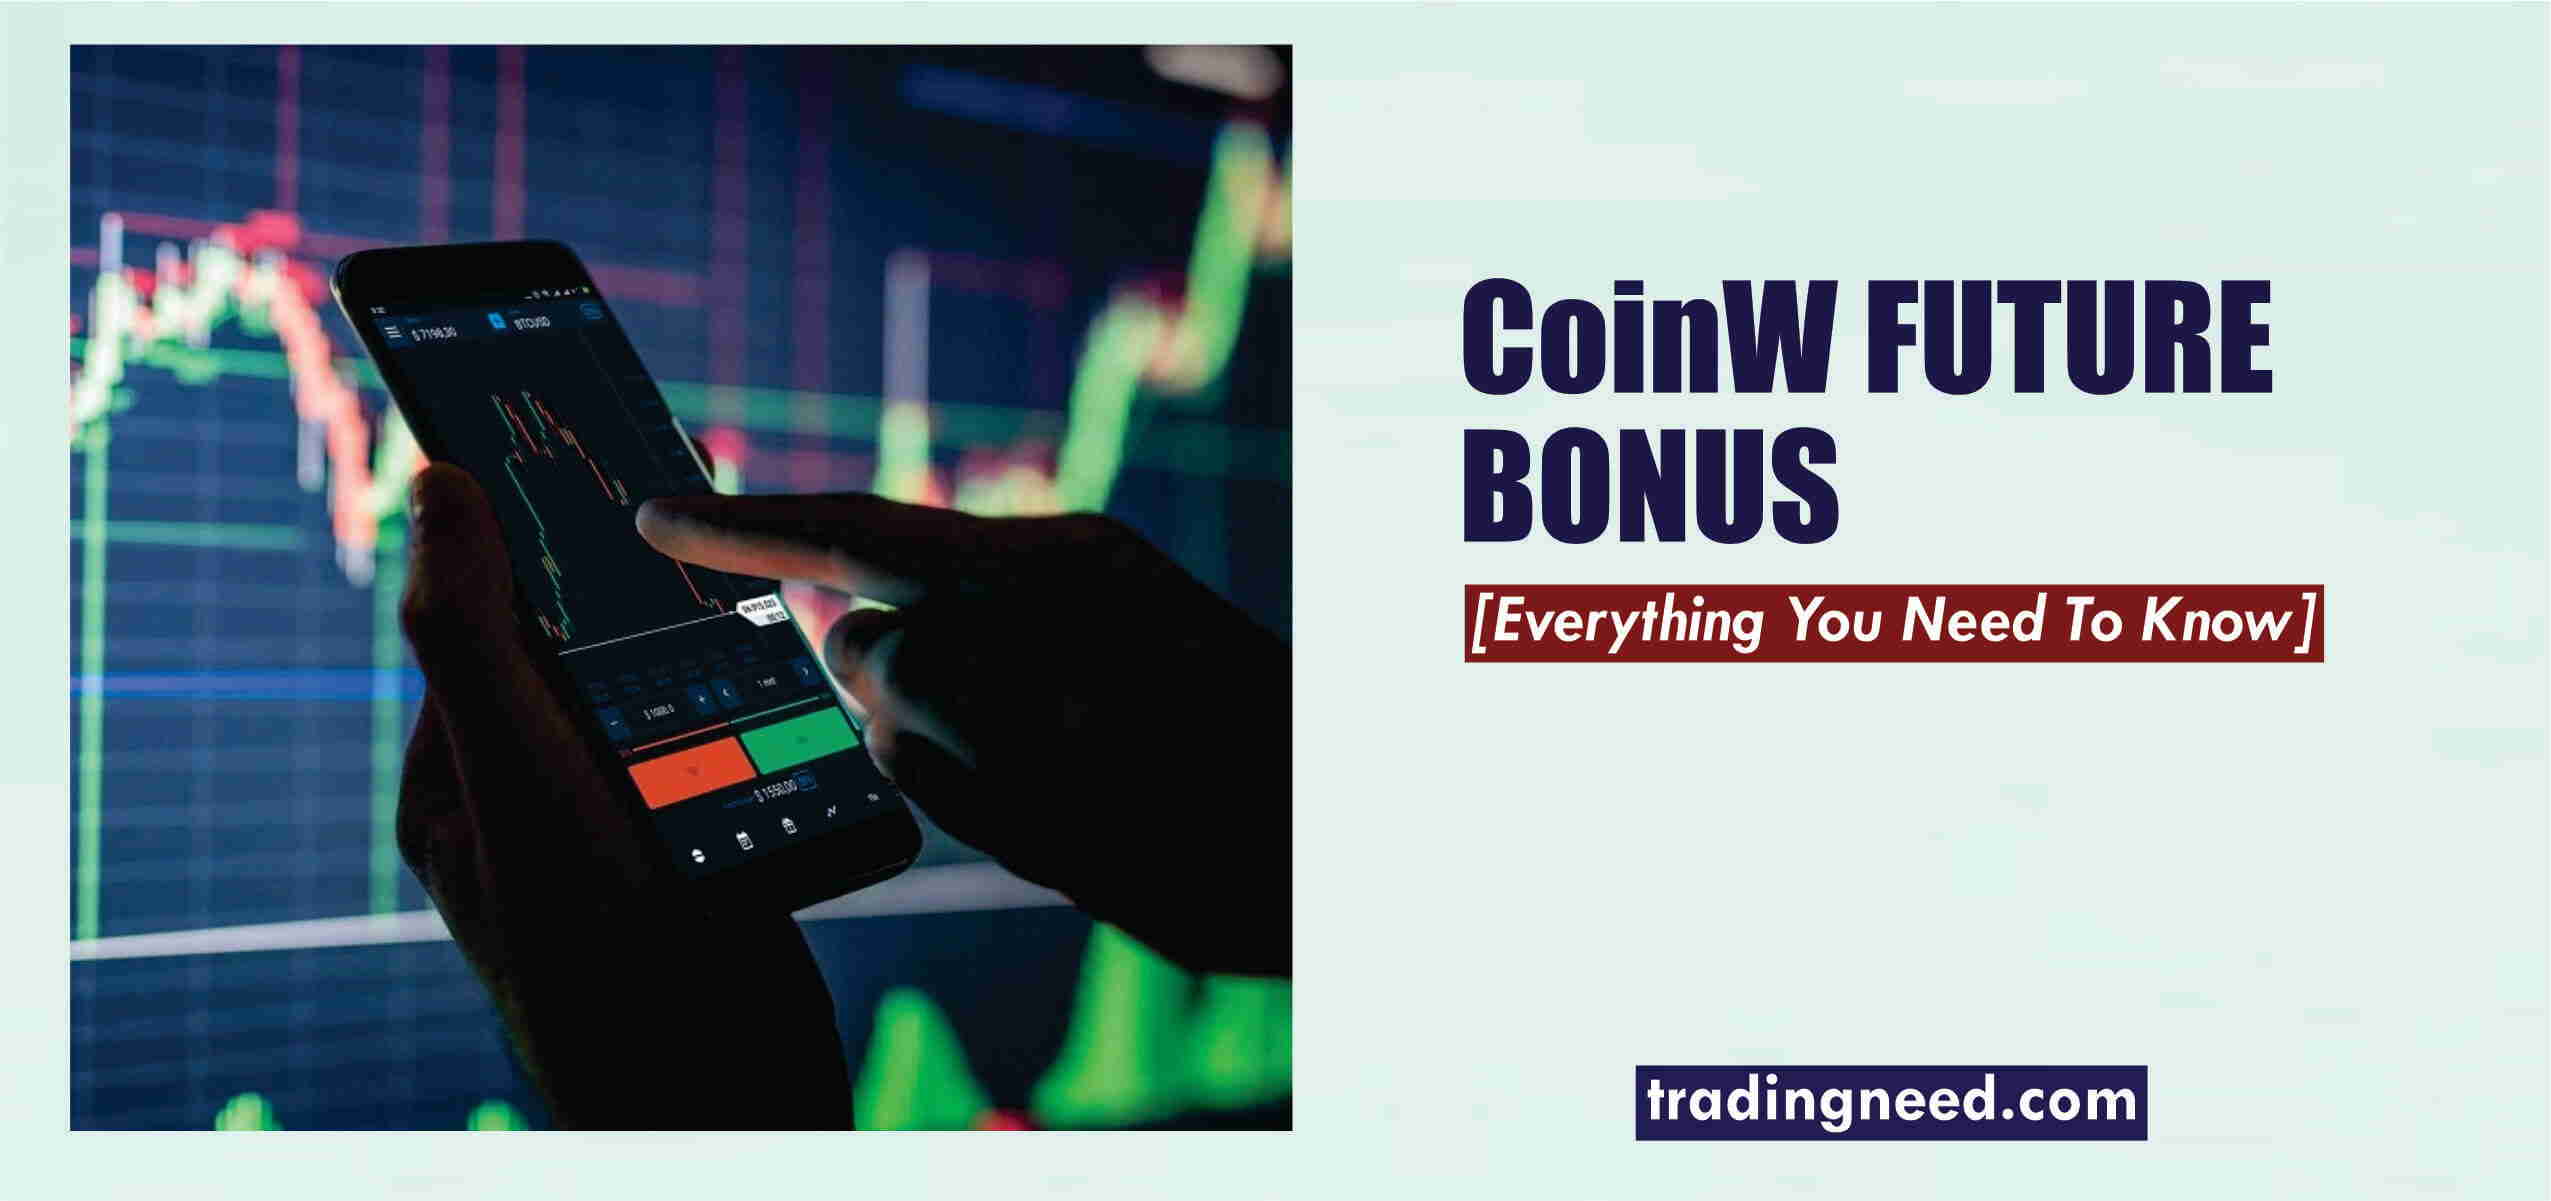 CoinW futures bonus